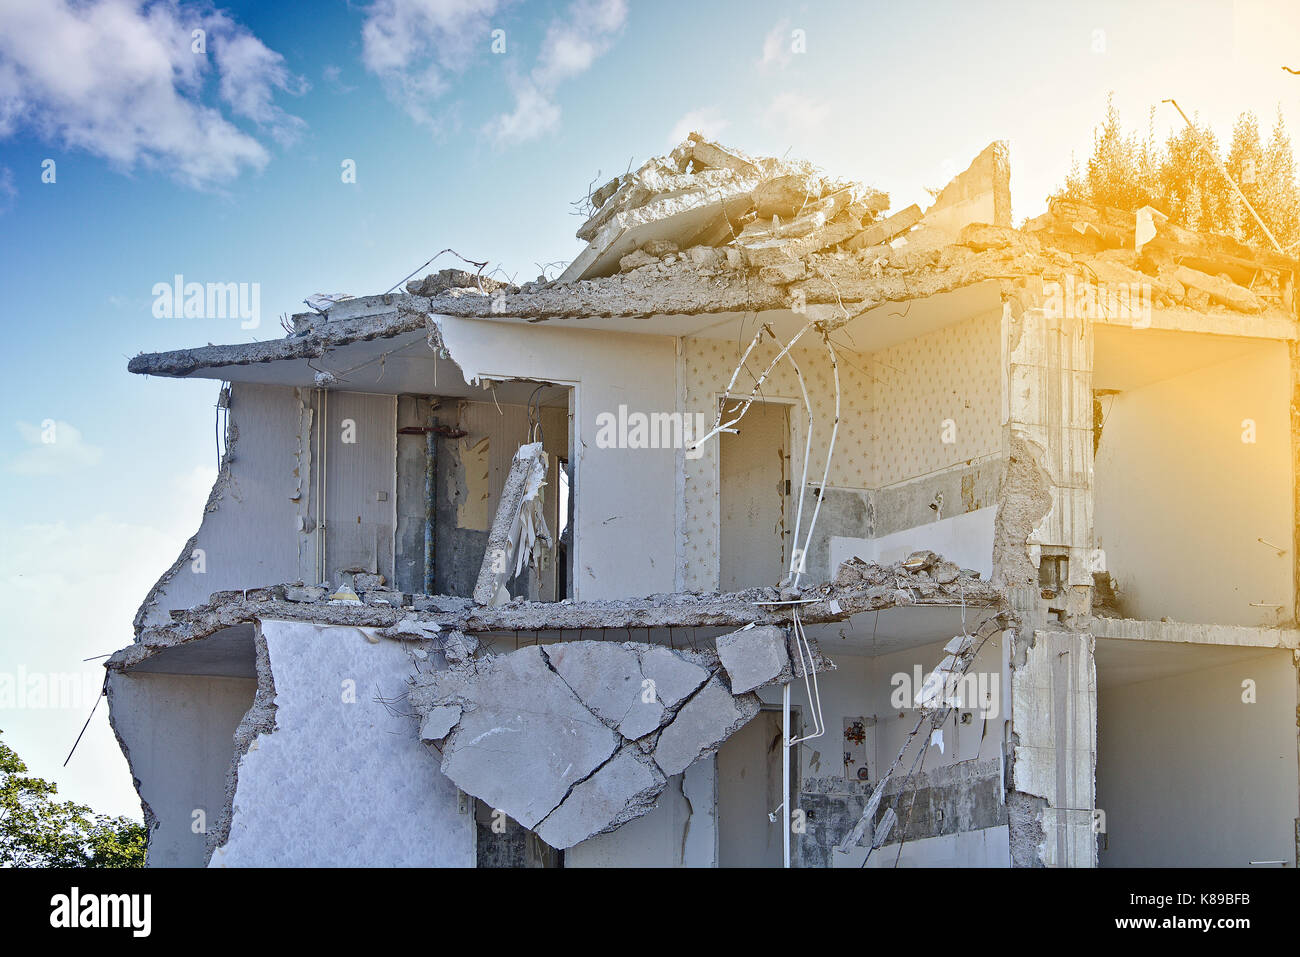 La rovina di un parzialmente demolito palazzo residenziale (piano superiore) davanti a un cielo blu con nuvole bianche Foto Stock